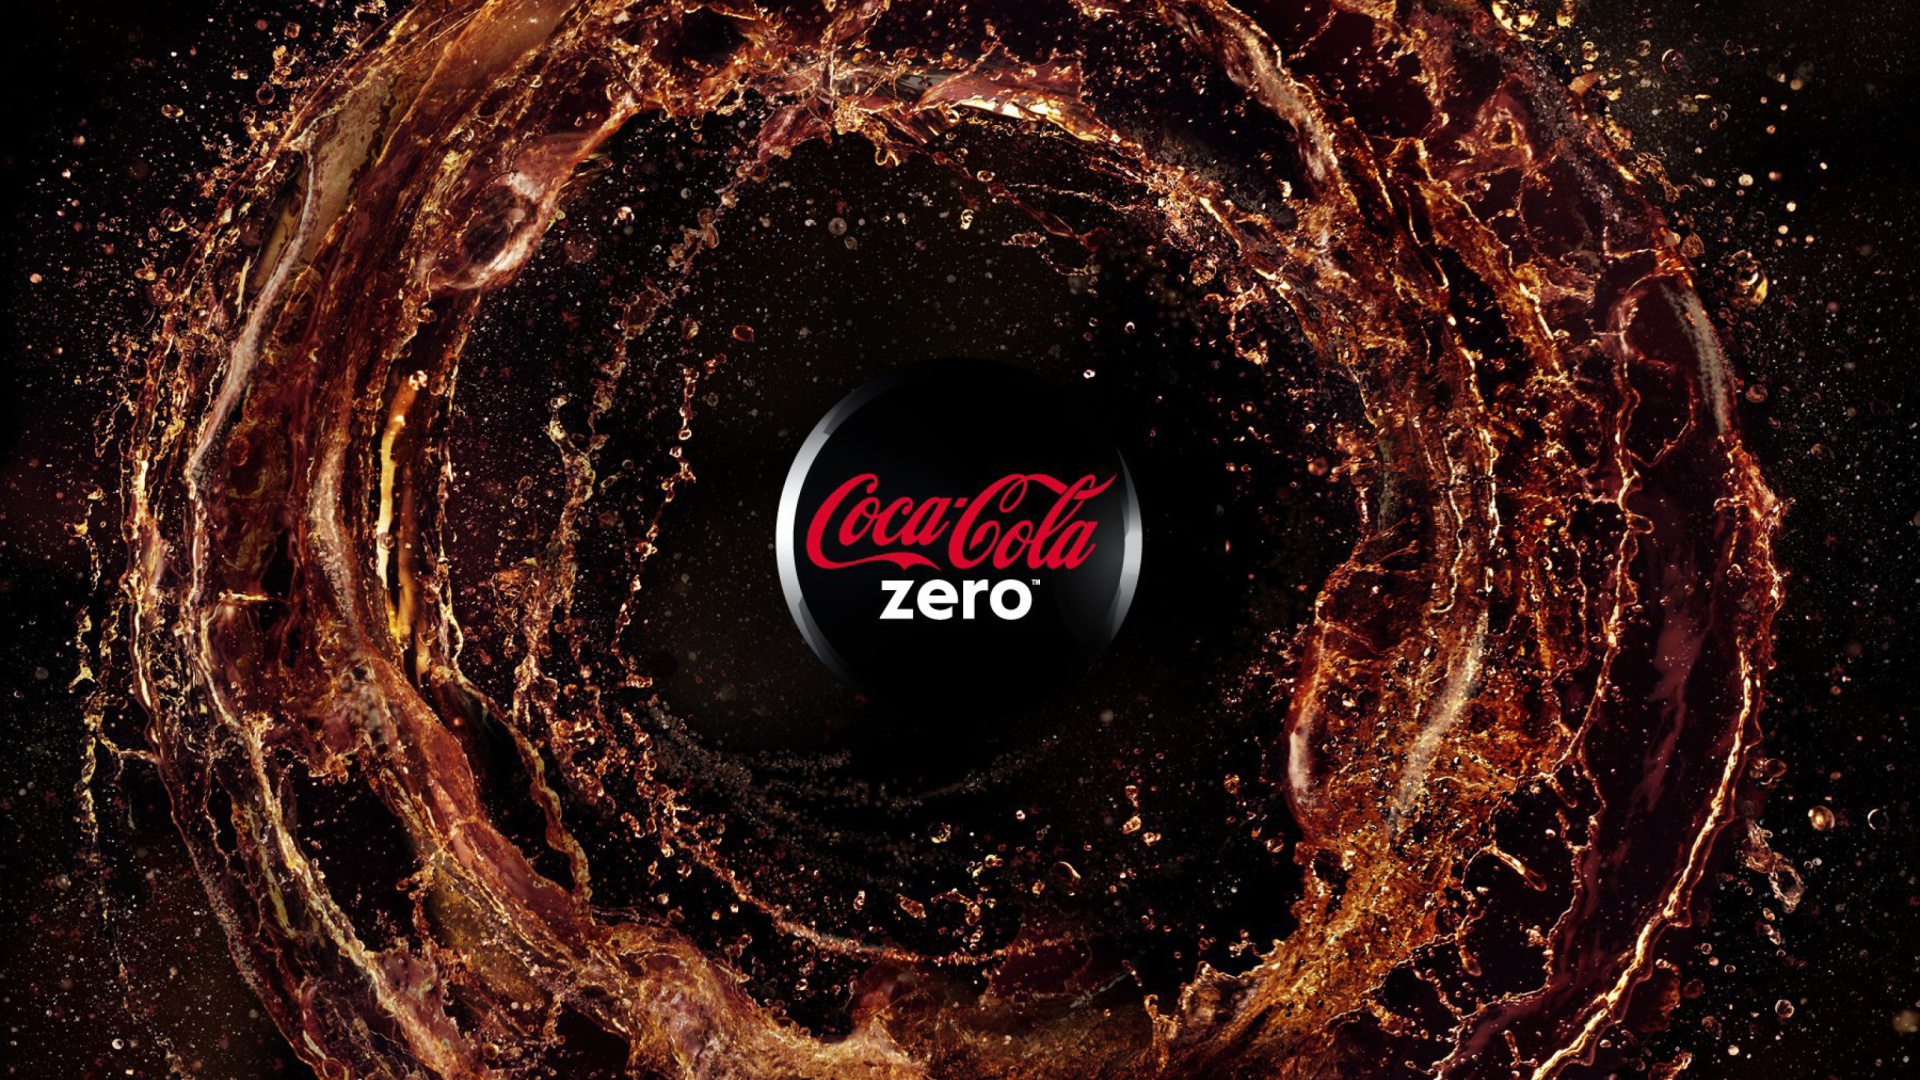 Sfondi Coca Cola Zero - Diet and Sugar Free 1920x1080